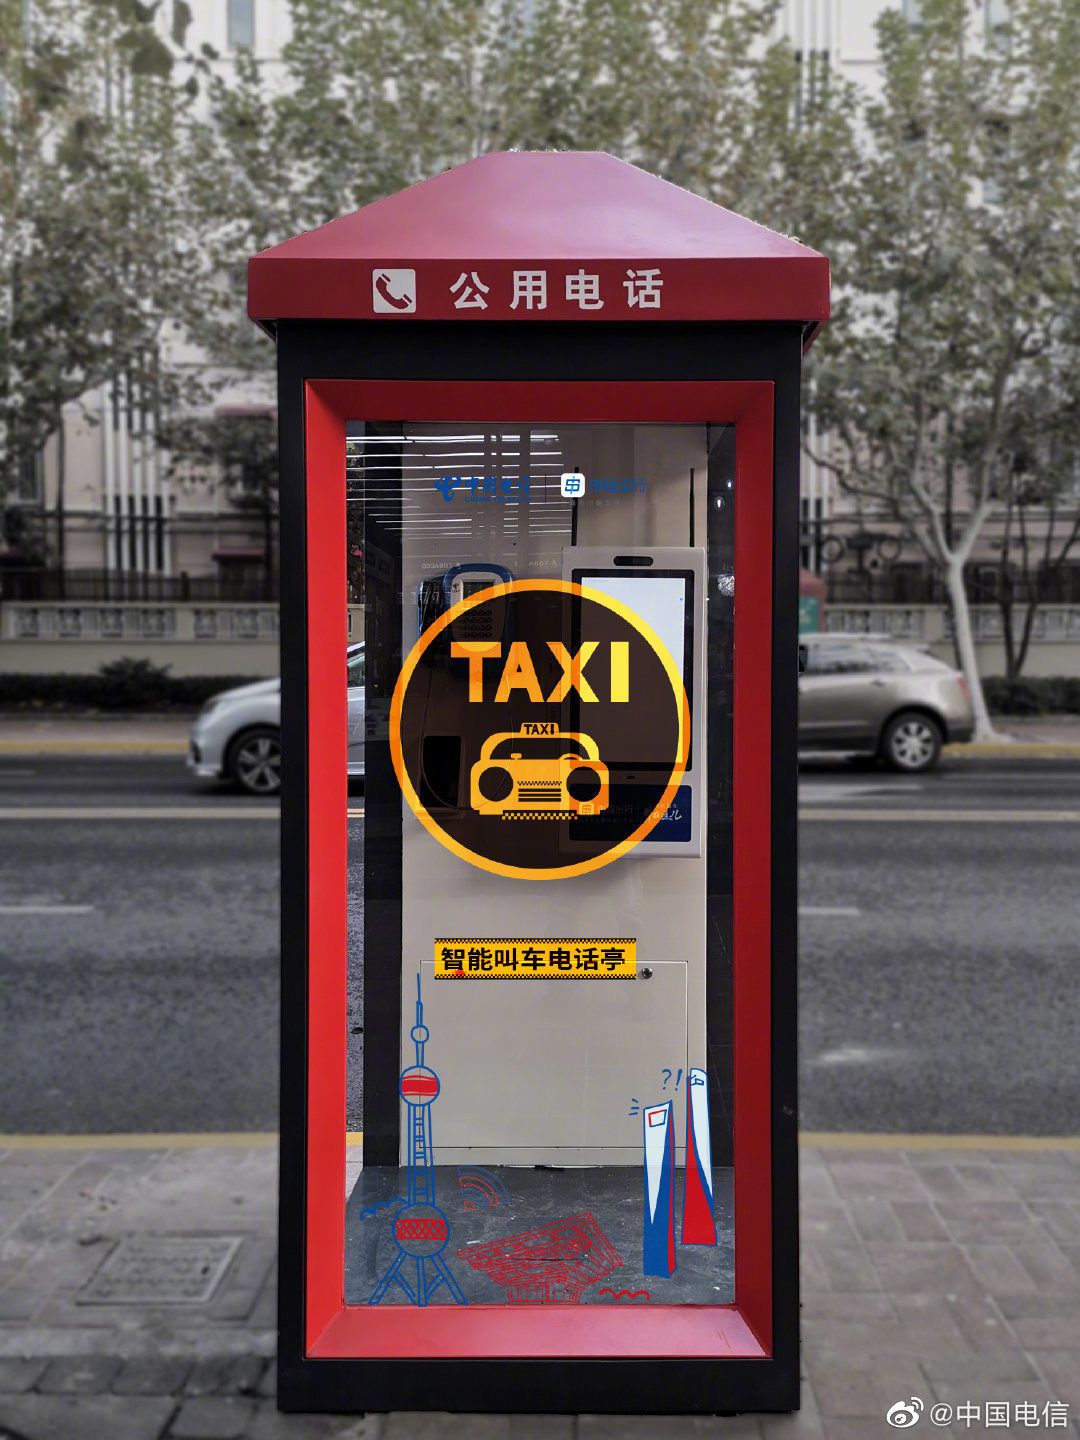 出租车|上海电话亭已支持“一键叫车”服务